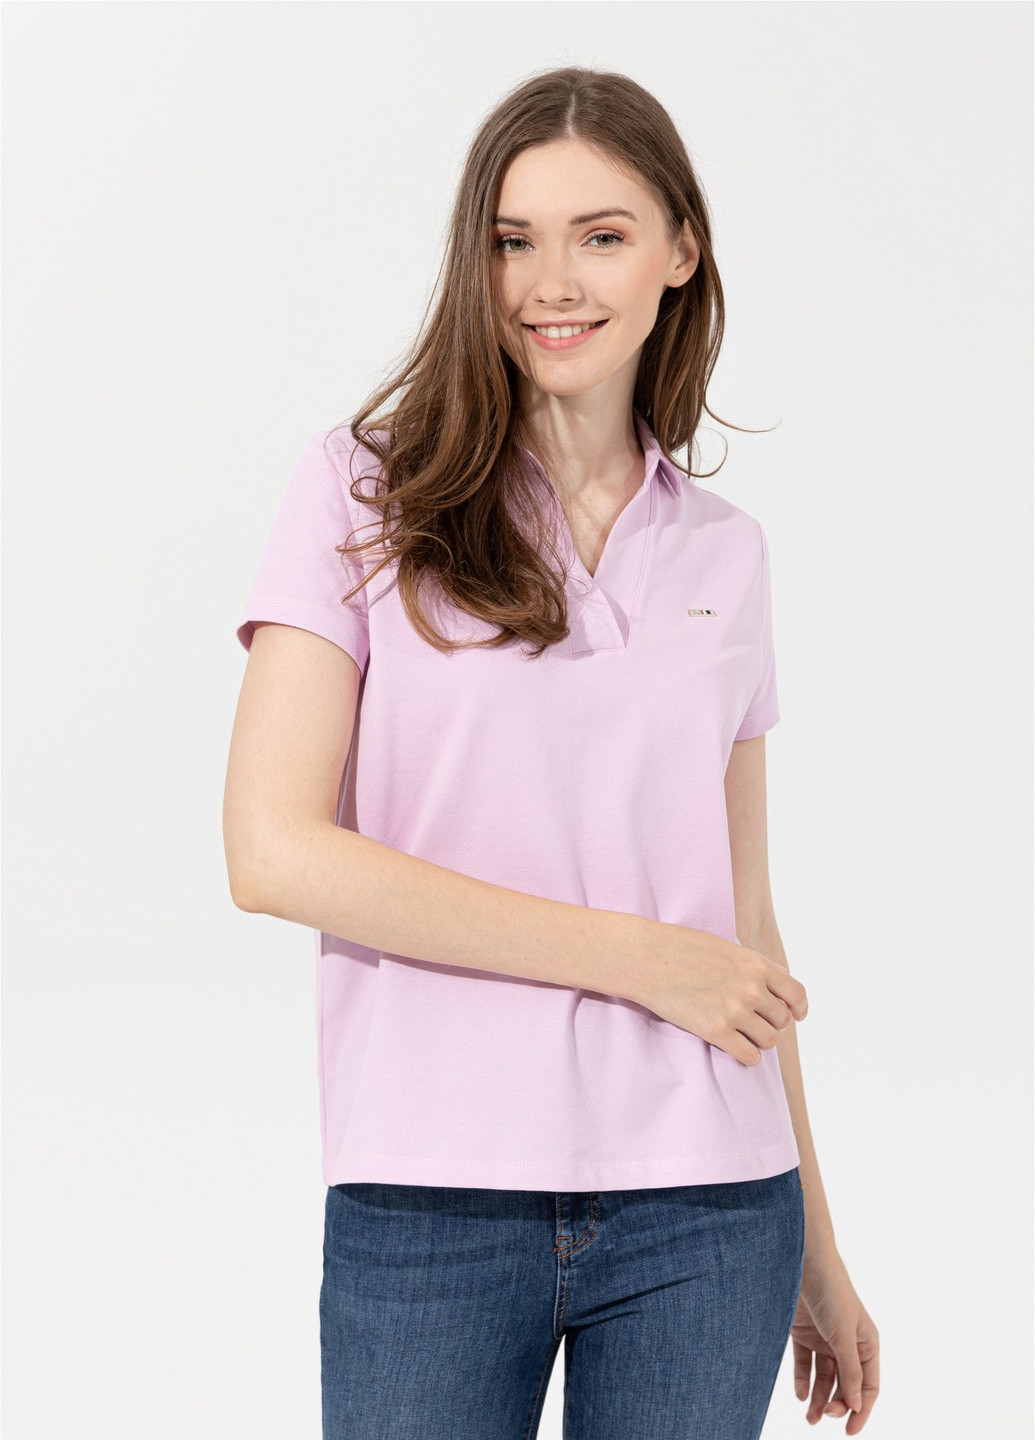 Розовая футболка поло женская U.S. Polo Assn.